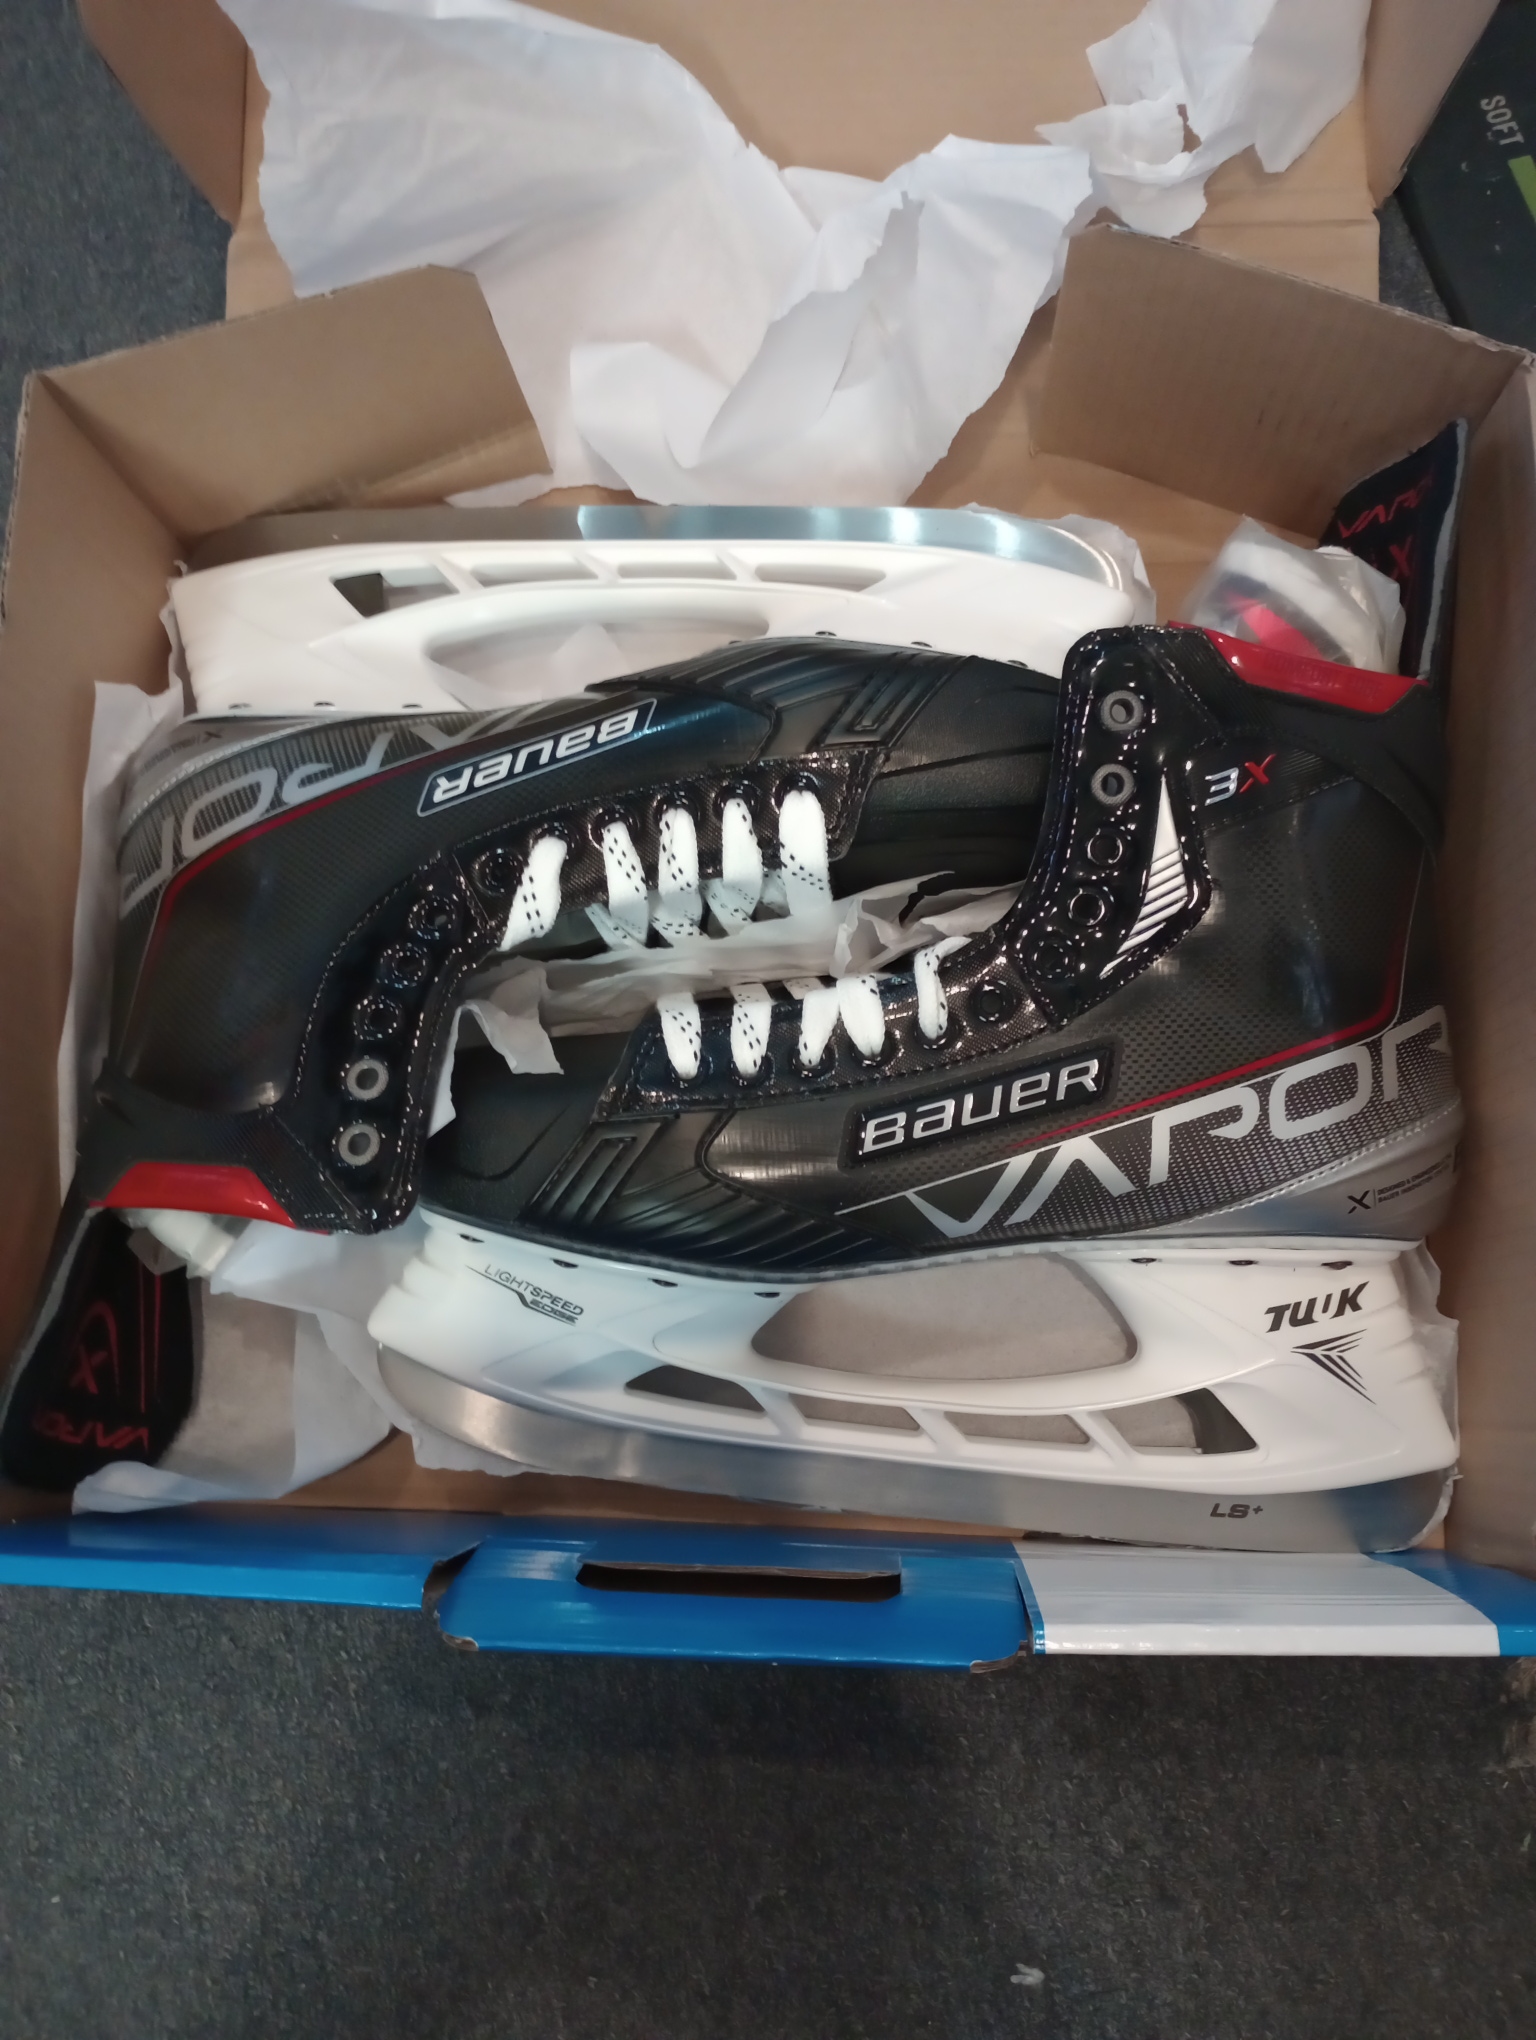 New Senior Bauer Vapor 3X Hockey Skates size 12 fit 1